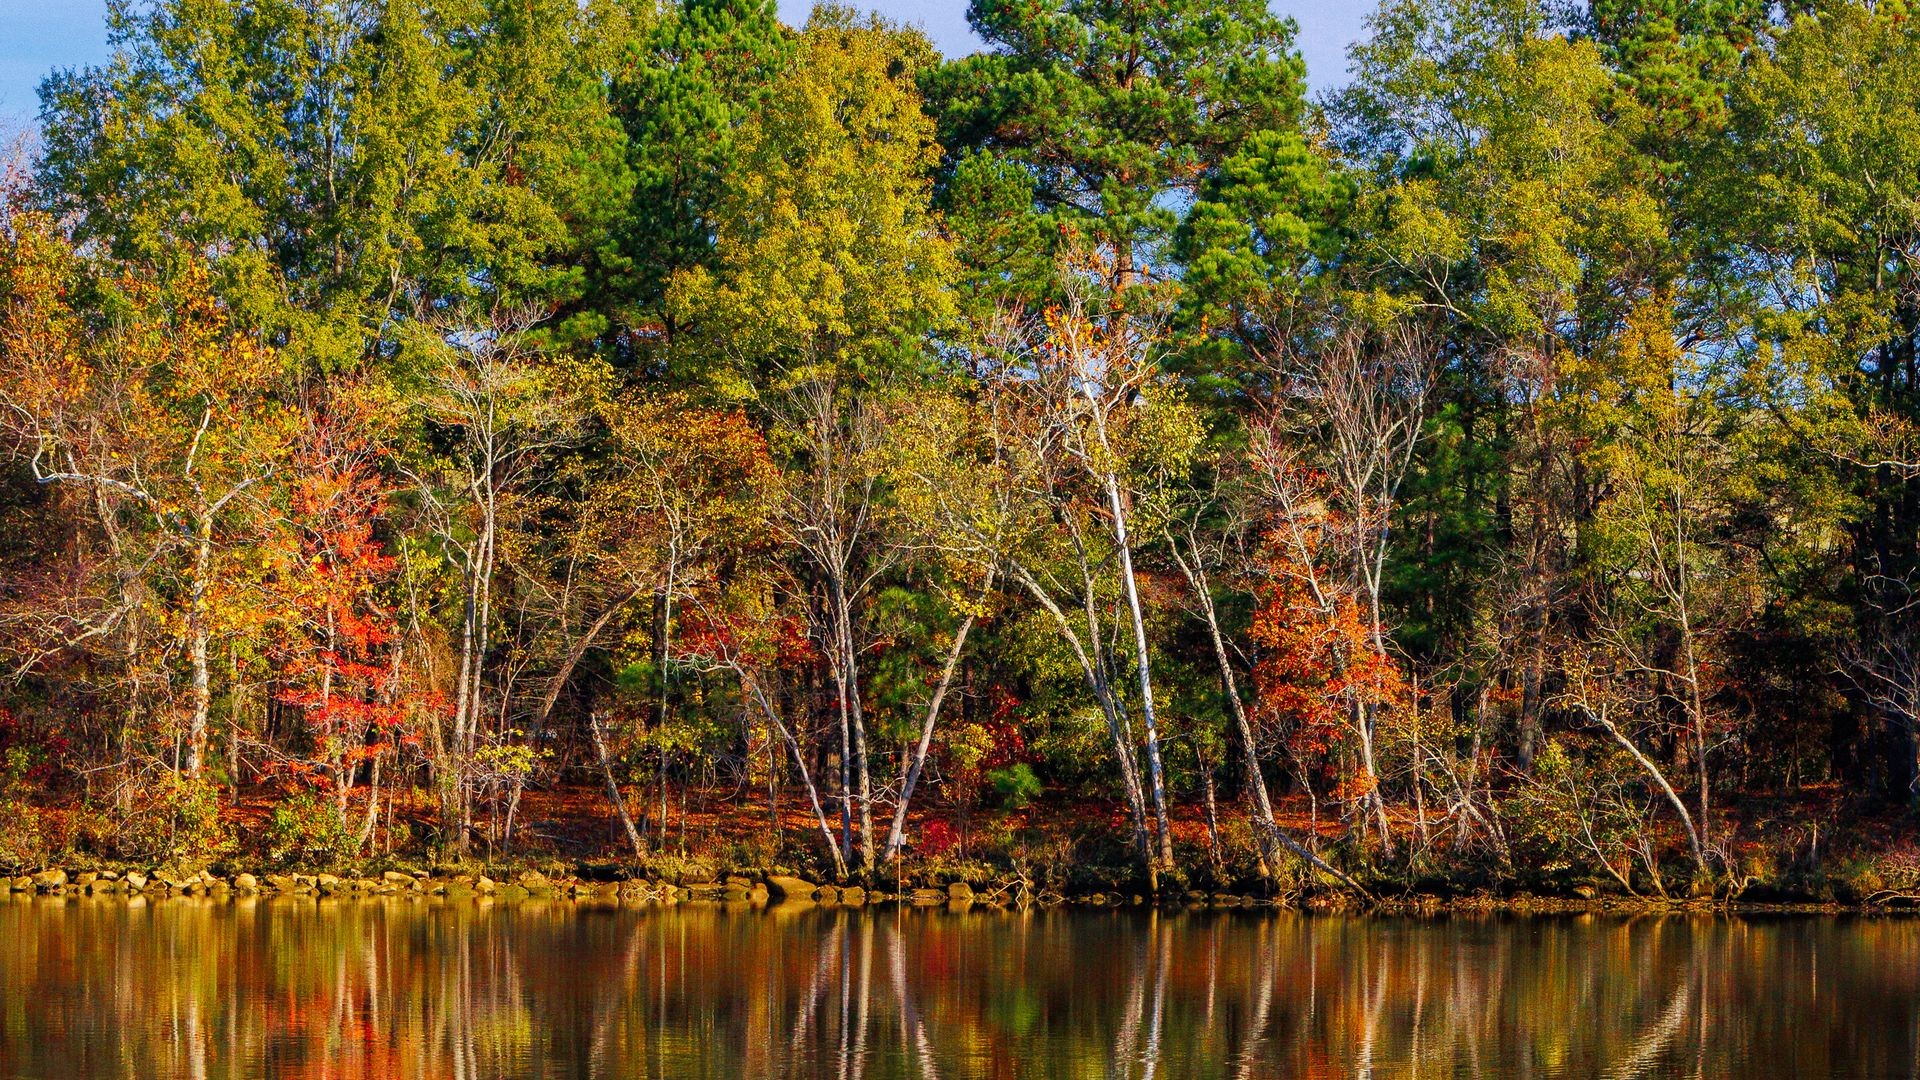 Fondos de pantalla Arboles durante el otoño reflejados en lago